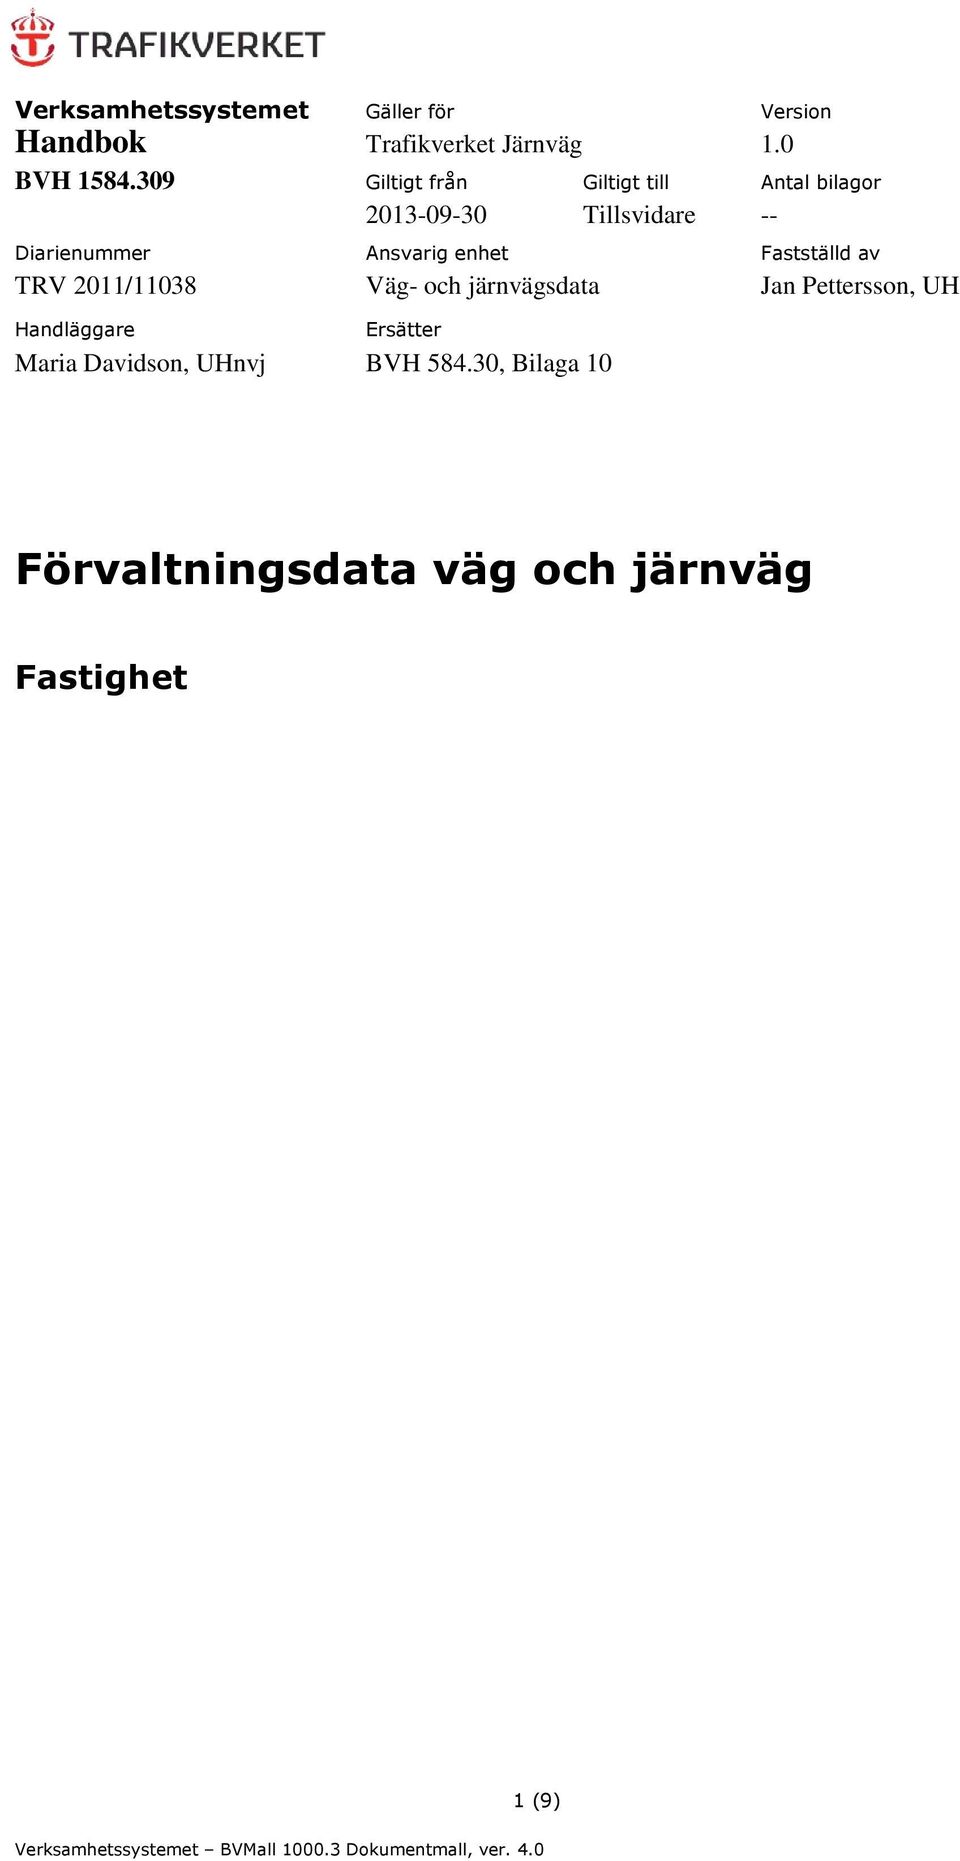 Fastställd av TRV 2011/11038 Väg- och järnvägsdata Jan Pettersson, UH Handläggare Ersätter Maria